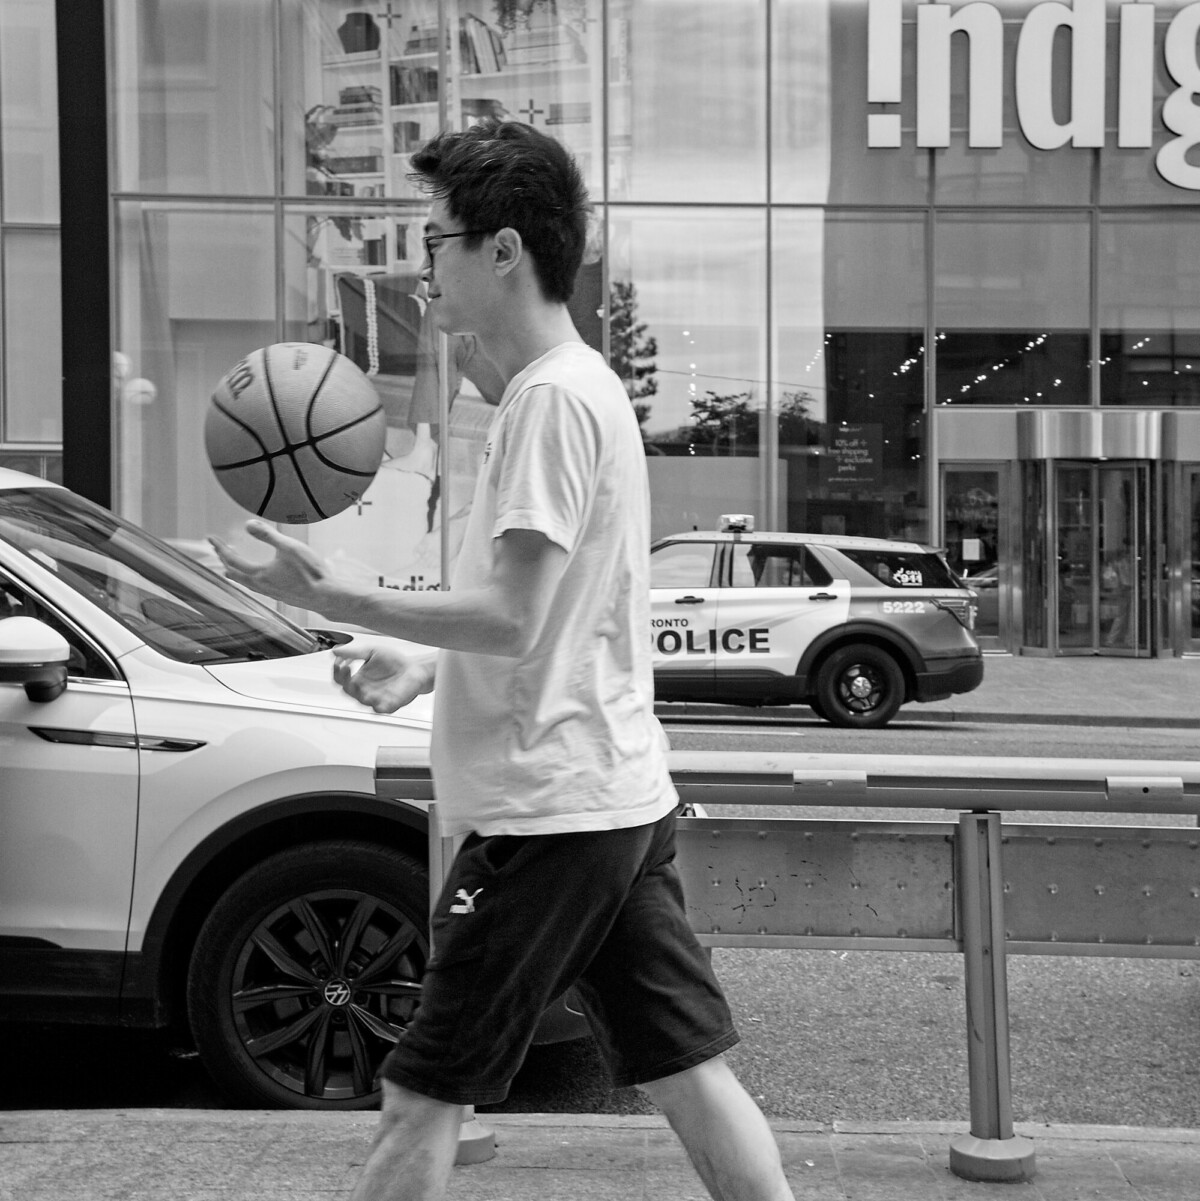 Man With Basketball